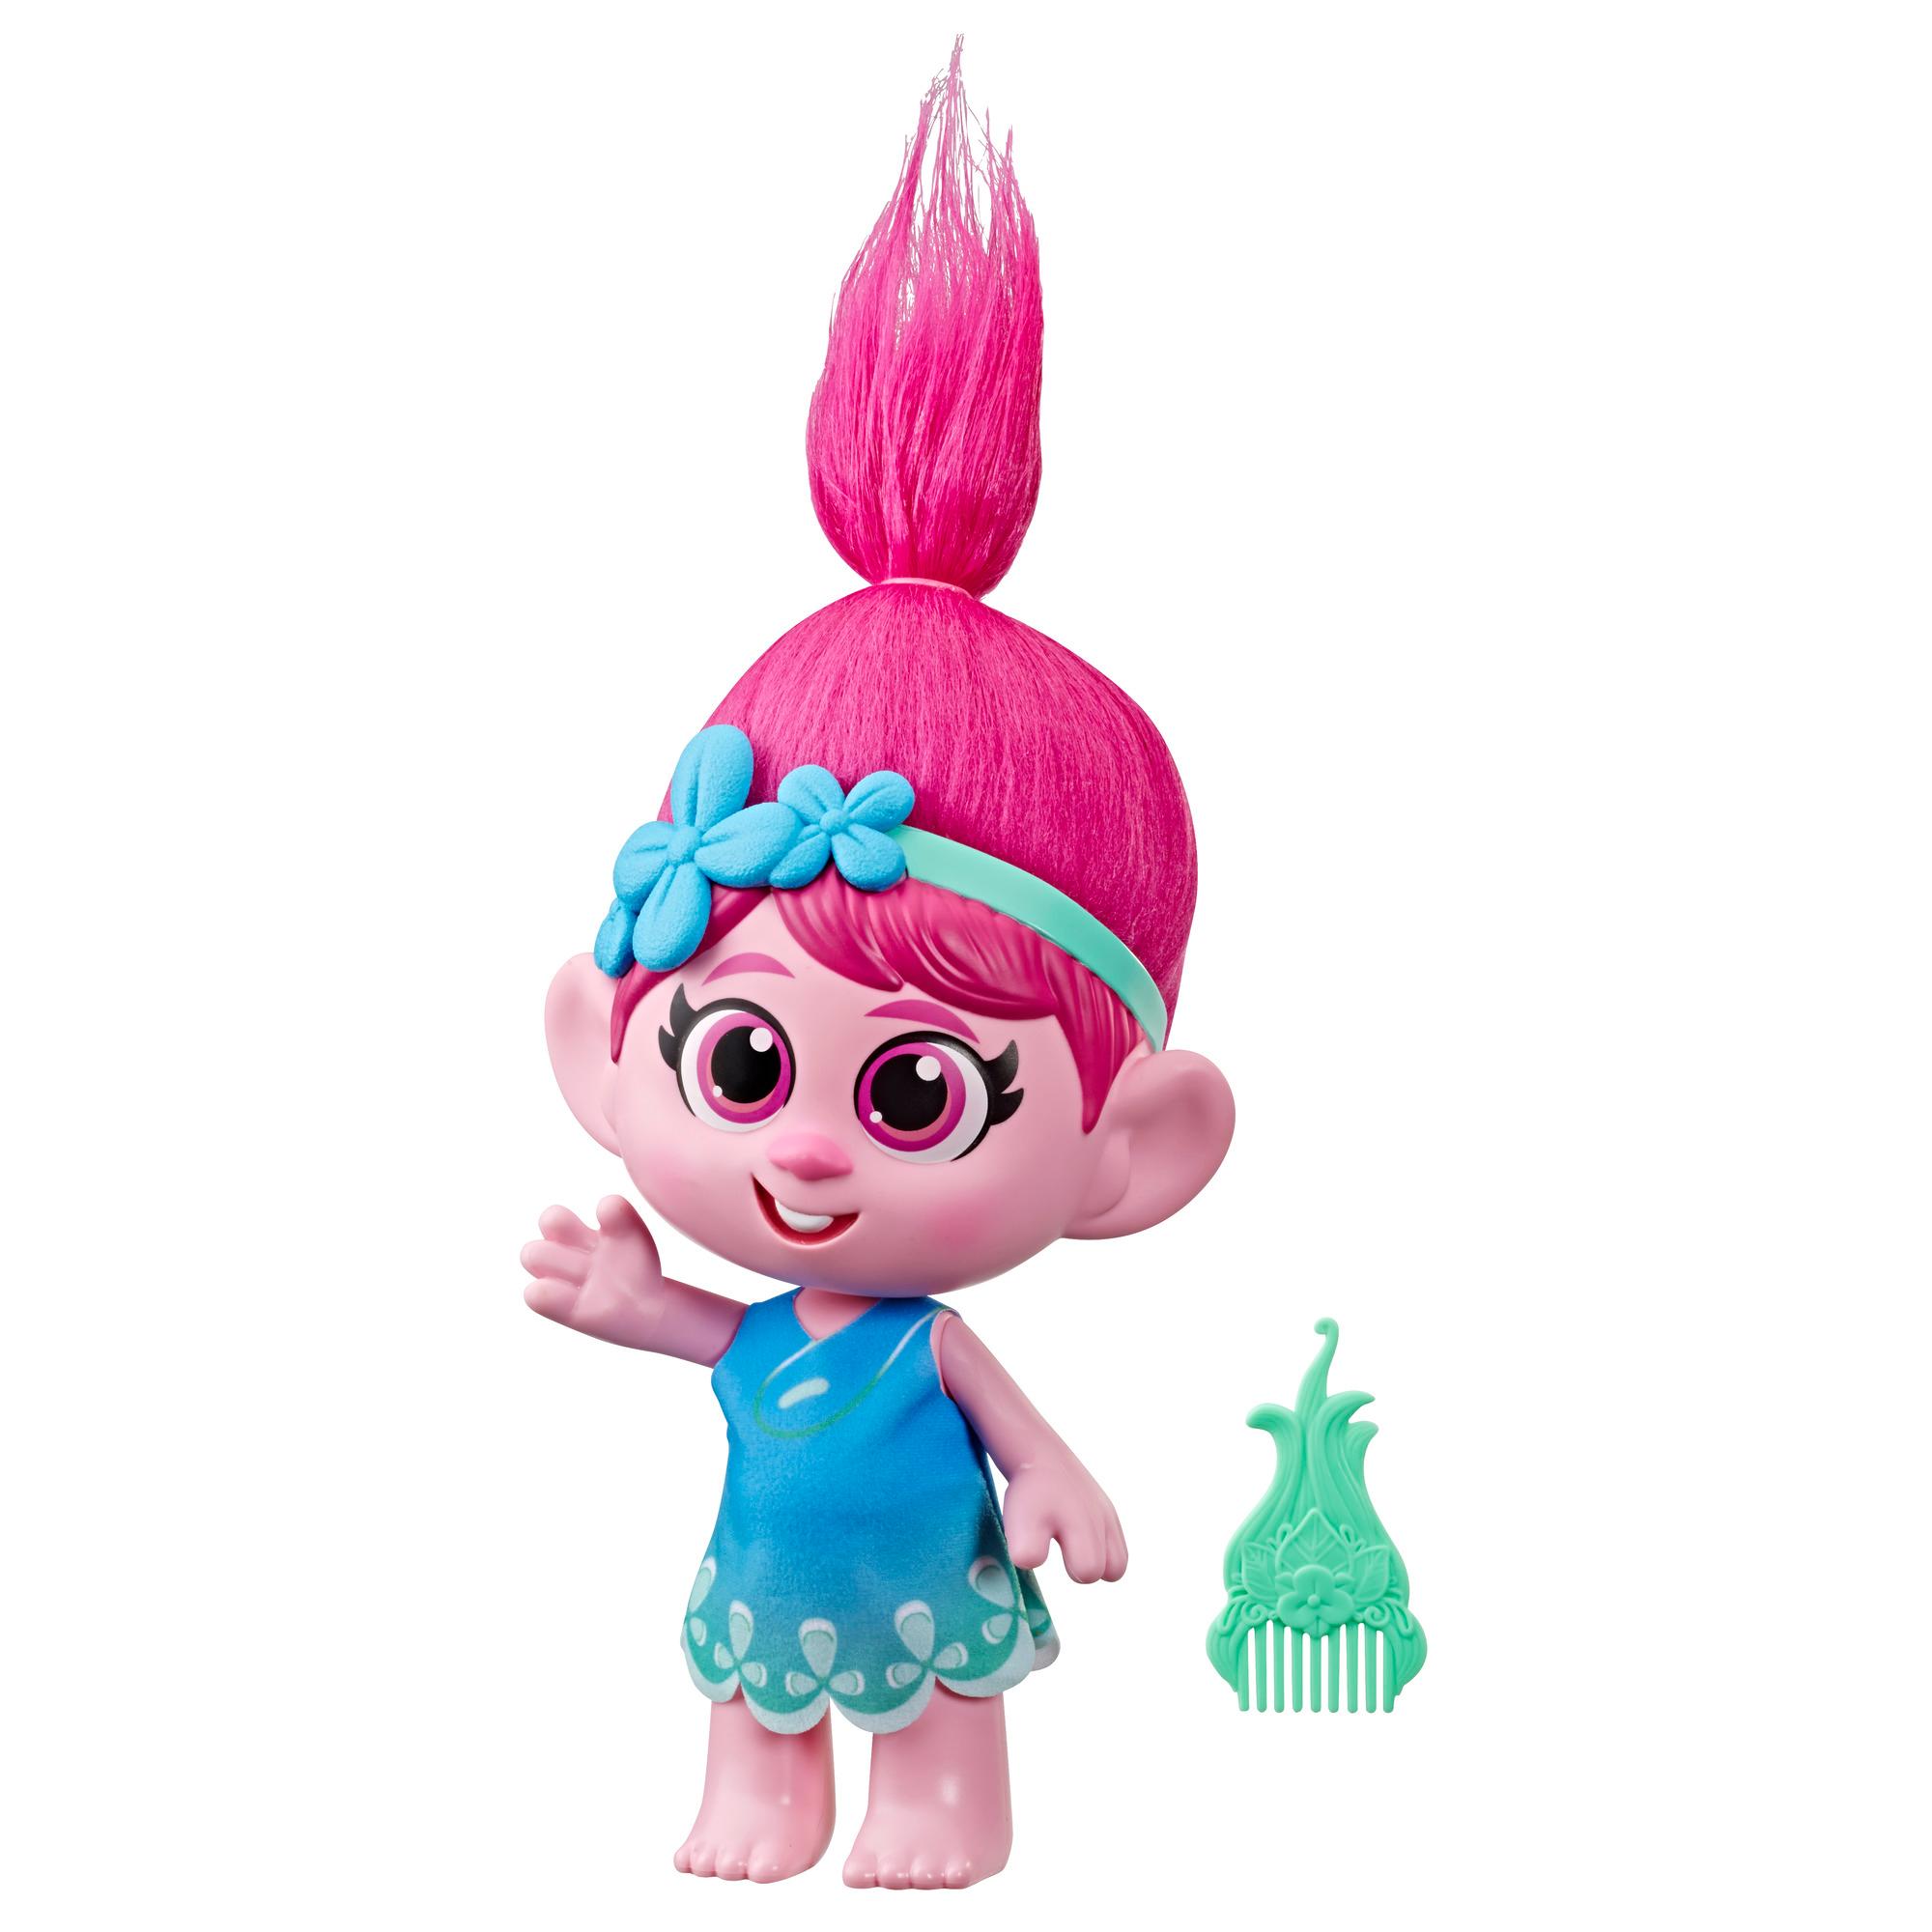 DreamWorks Trolls World Tour Kleine Poppy Puppe mit abnehmbarem Kleid und Kamm, inspiriert vom Film Trolls World Tour